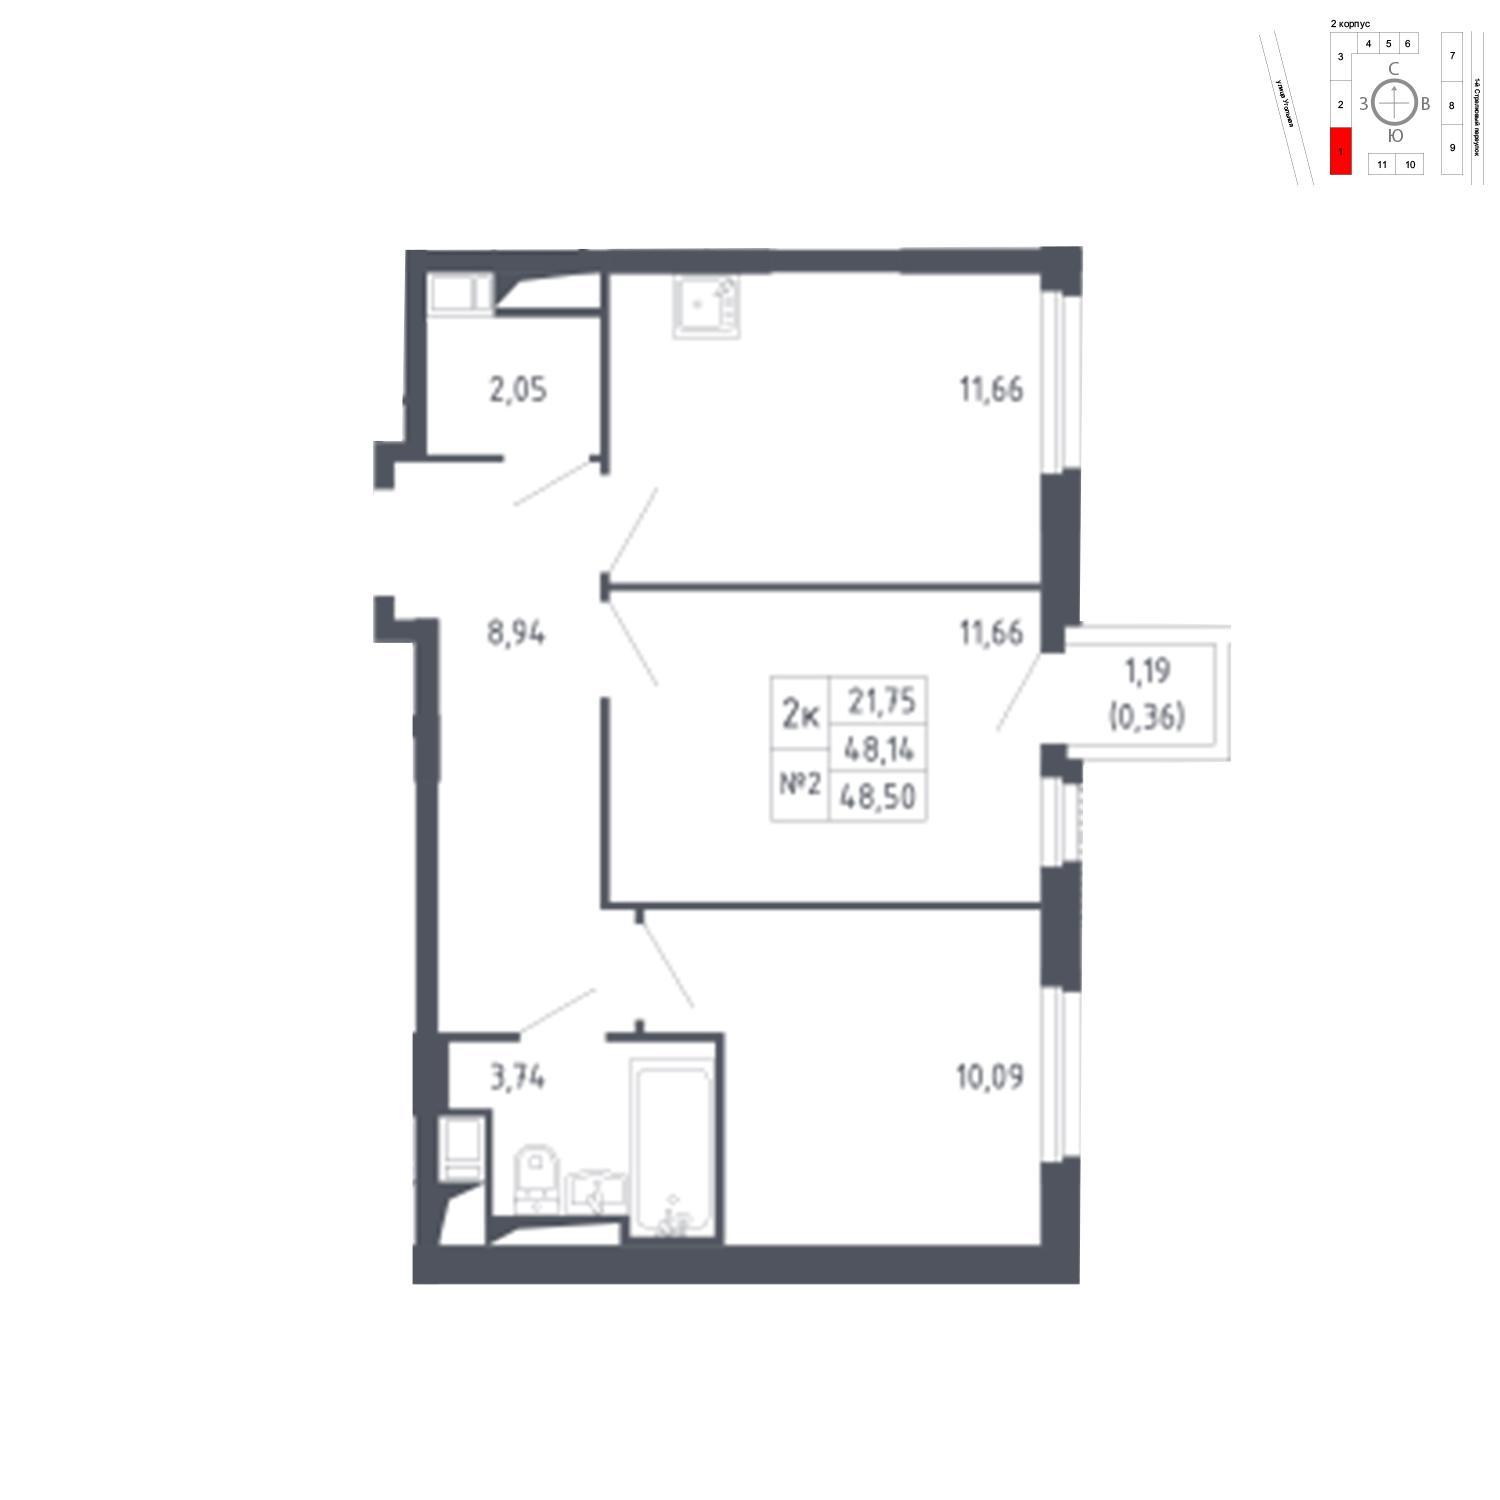 Продаётся 2-комнатная квартира в новостройке 48.5 кв.м. этаж 11/17 за 8 758 865 руб 